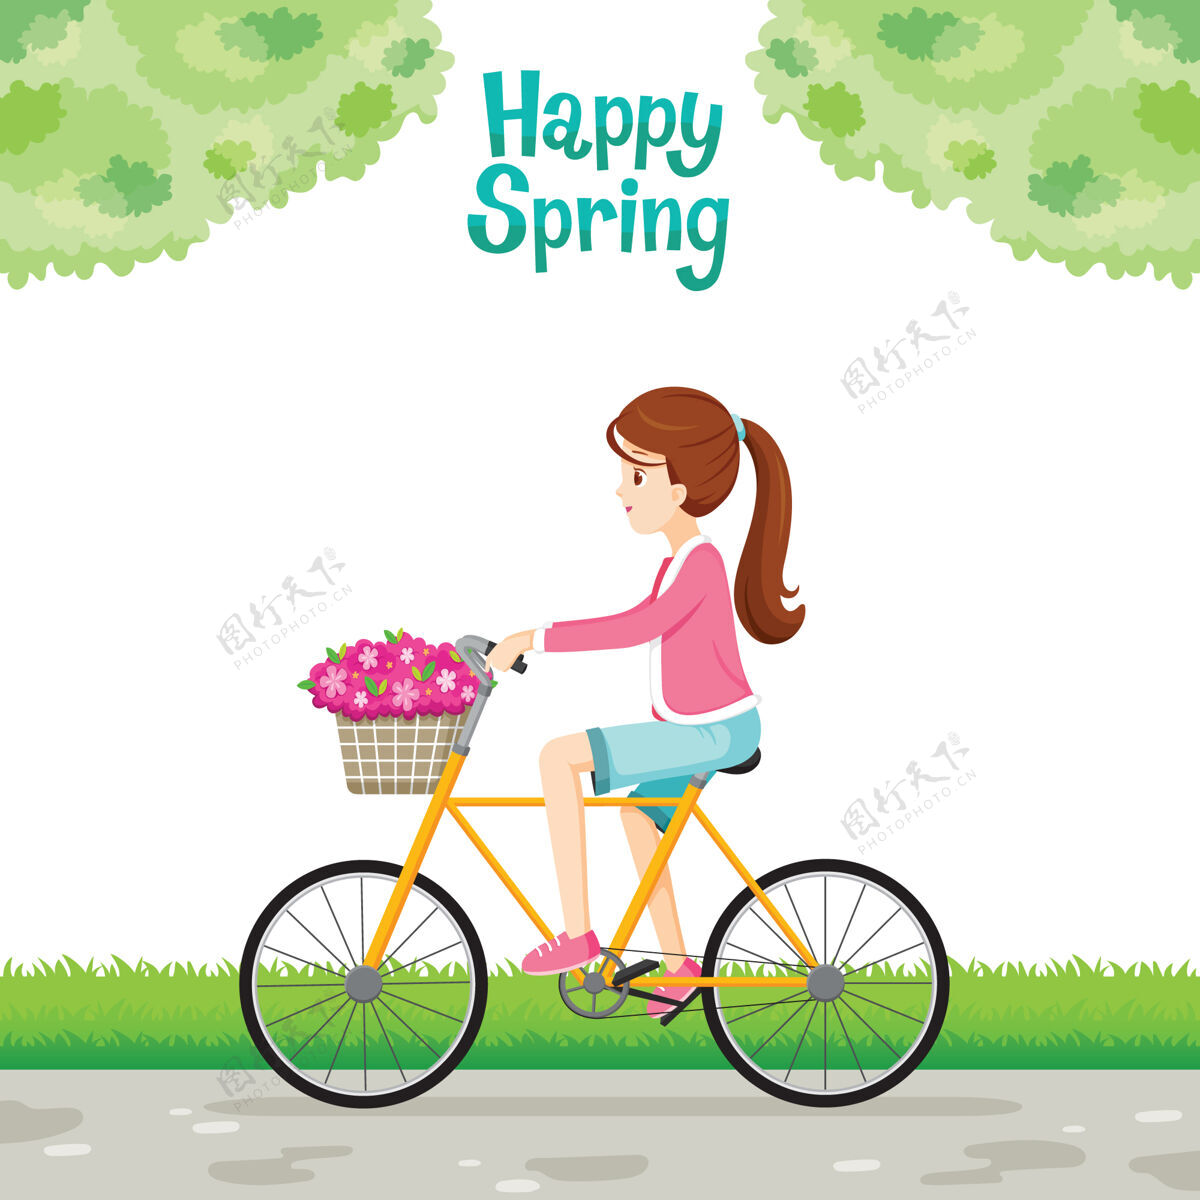 草骑自行车的女孩把花篮放在自行车前面春天交通篮子